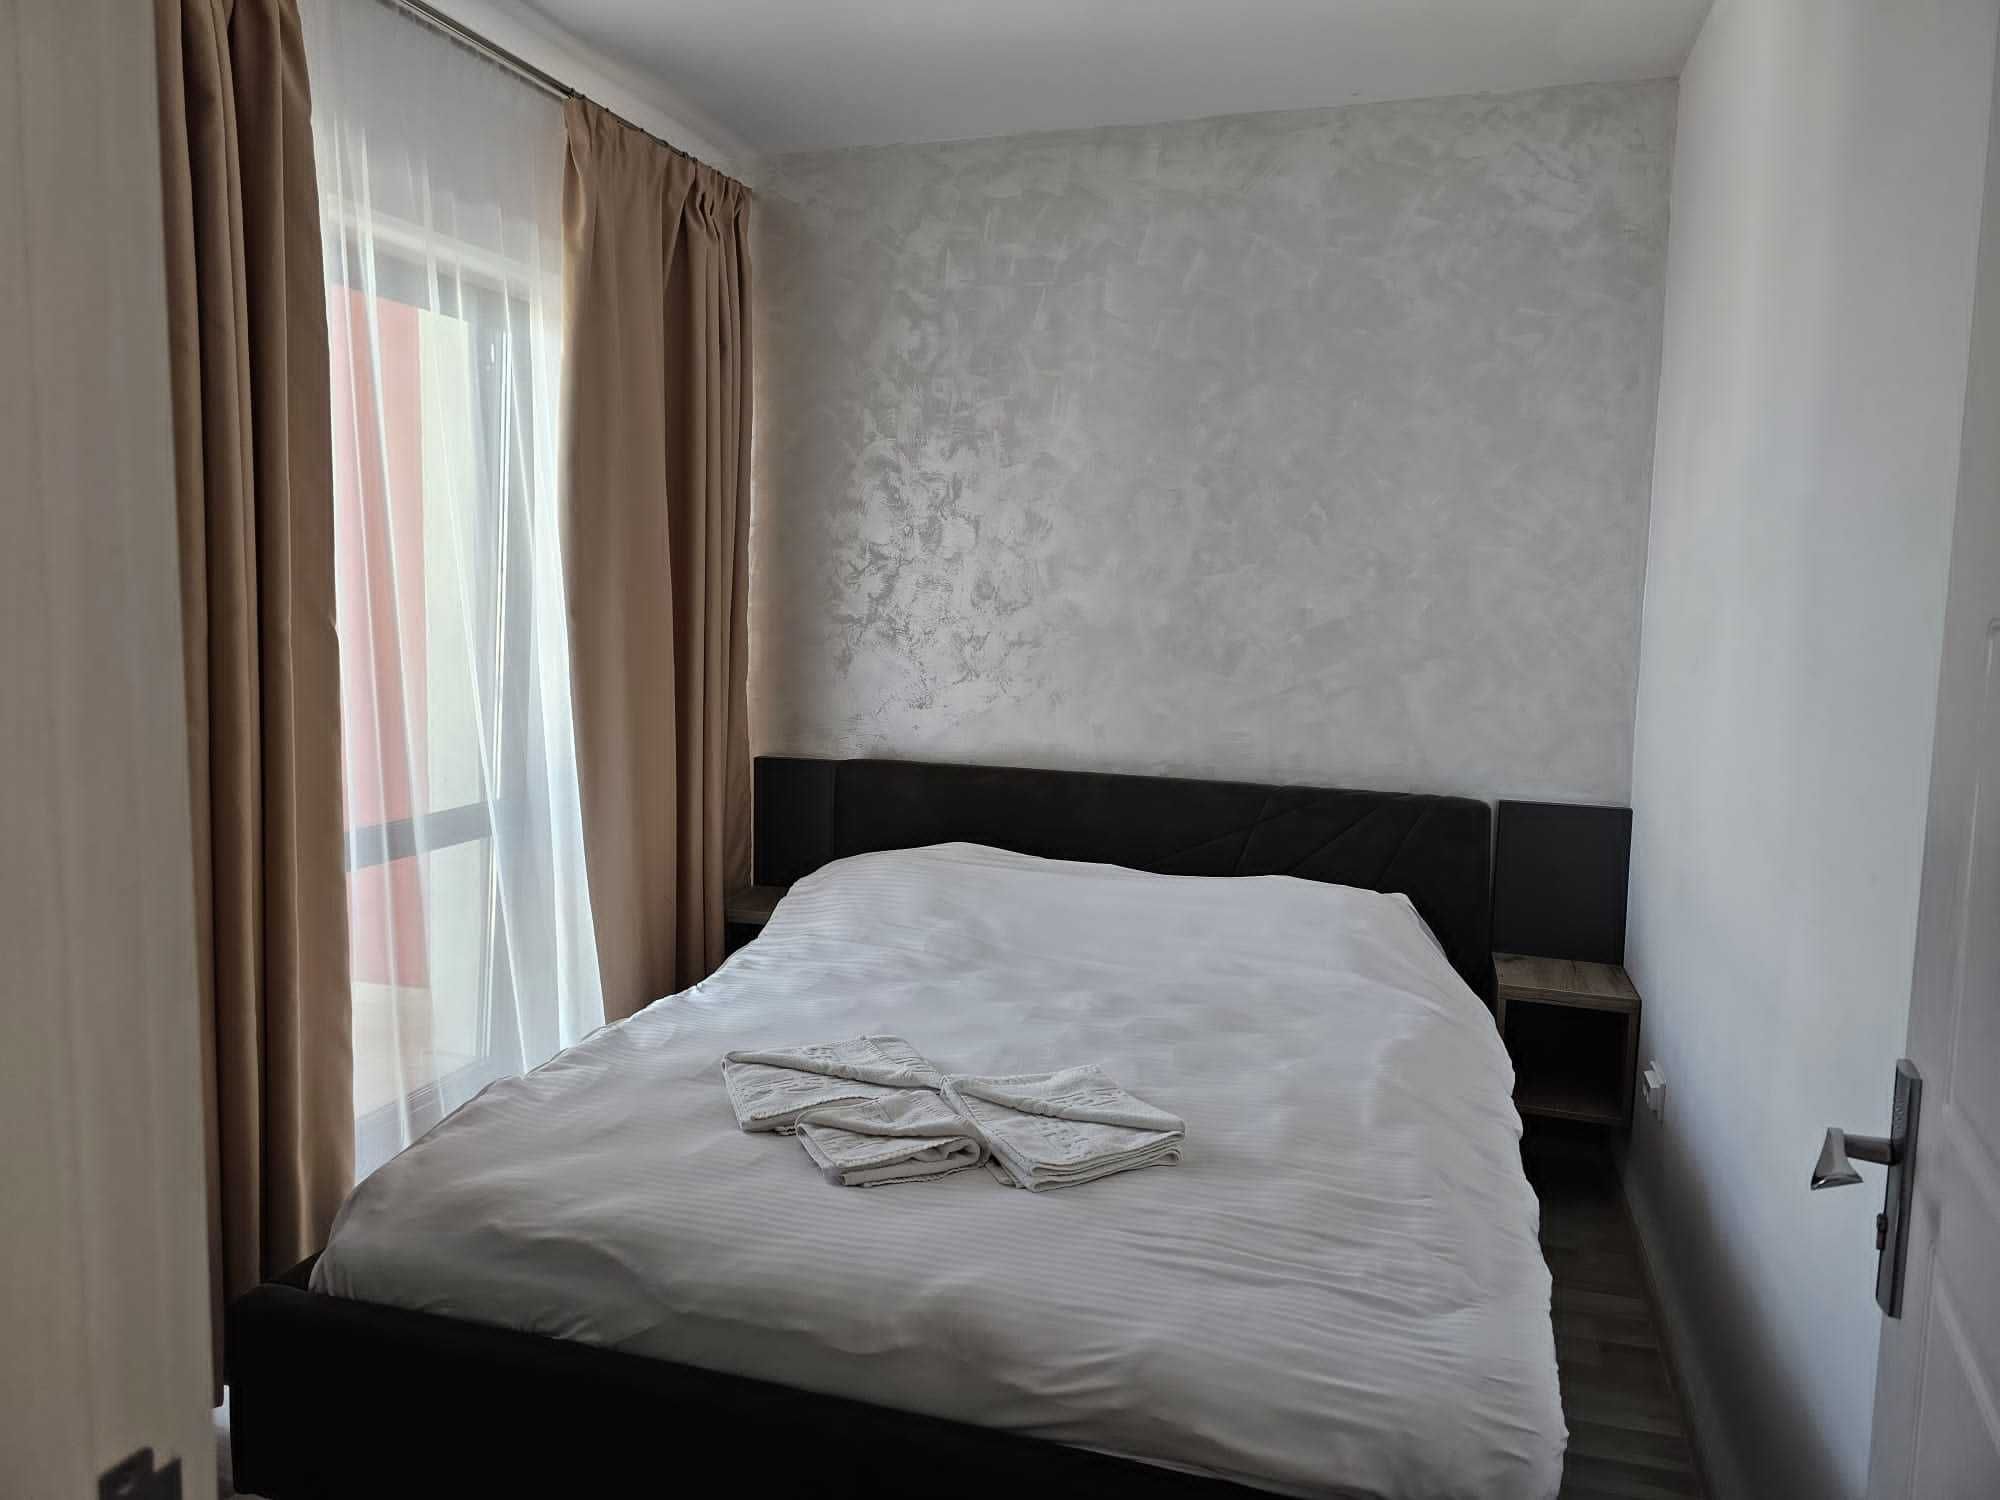 Apartamente in Regim Hotelier Palas/Tudor/Newton 1-2 camere